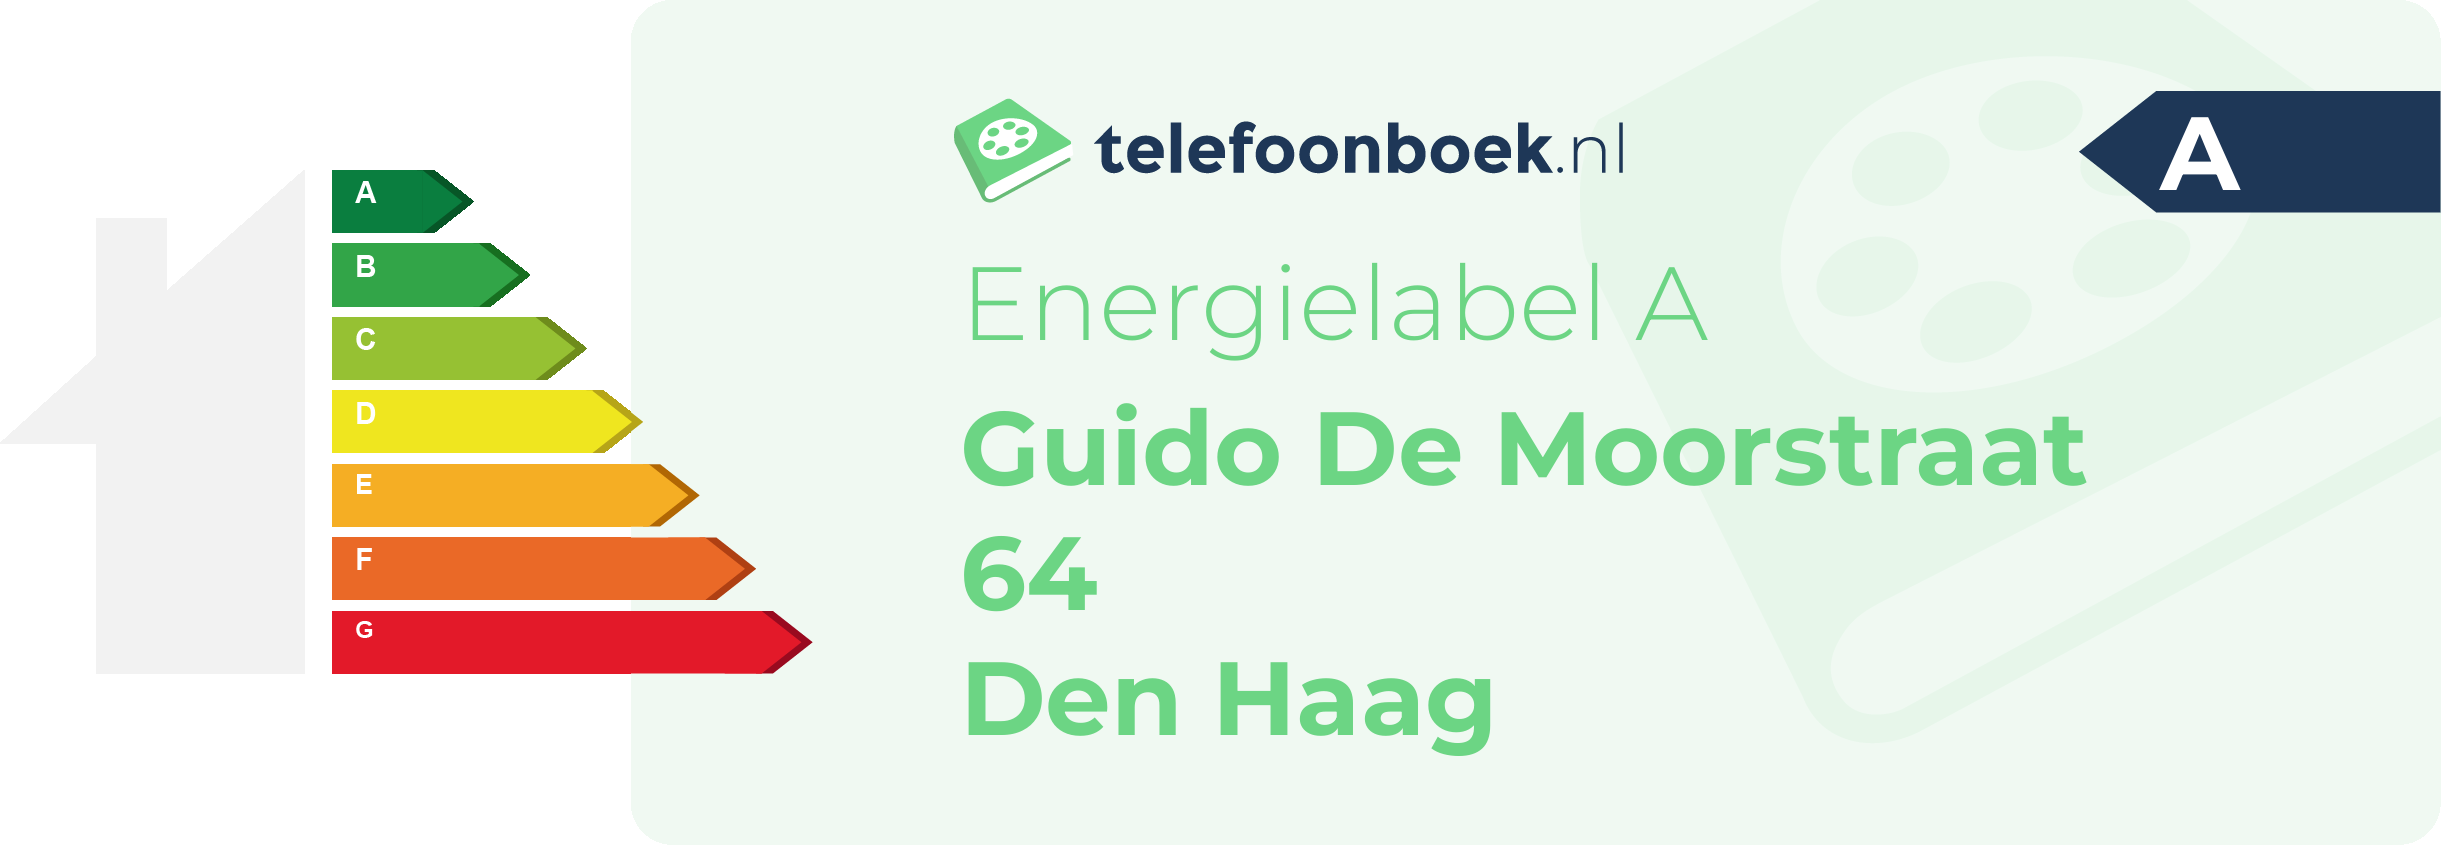 Energielabel Guido De Moorstraat 64 Den Haag